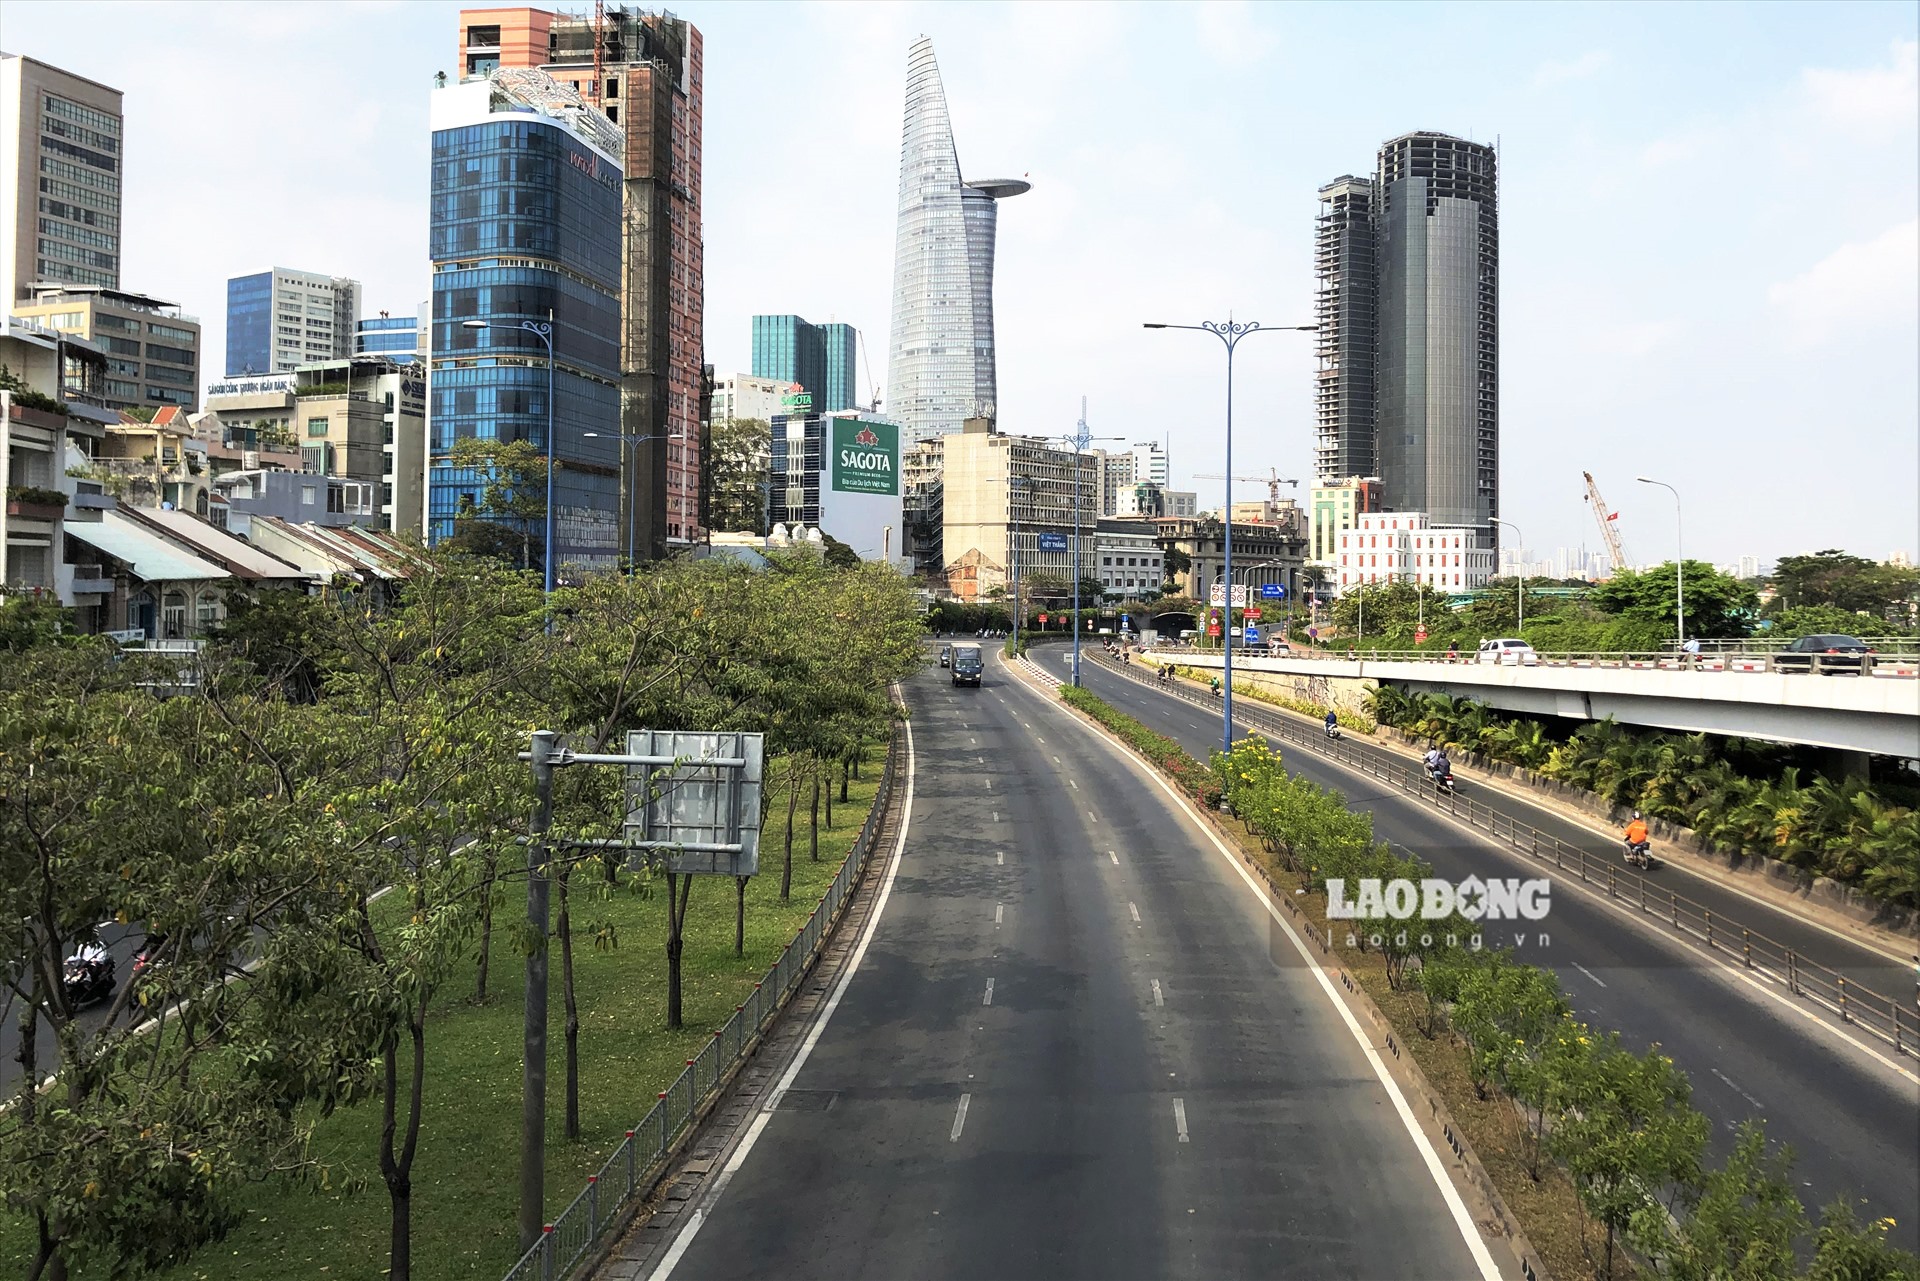 Trong 5 ngày đầu cách ly xã hội, đường phố TPHCM thay đổi rõ rệt về mật độ phương tiện giao thông so với những ngày trước đó. Ảnh: Hà Phương.